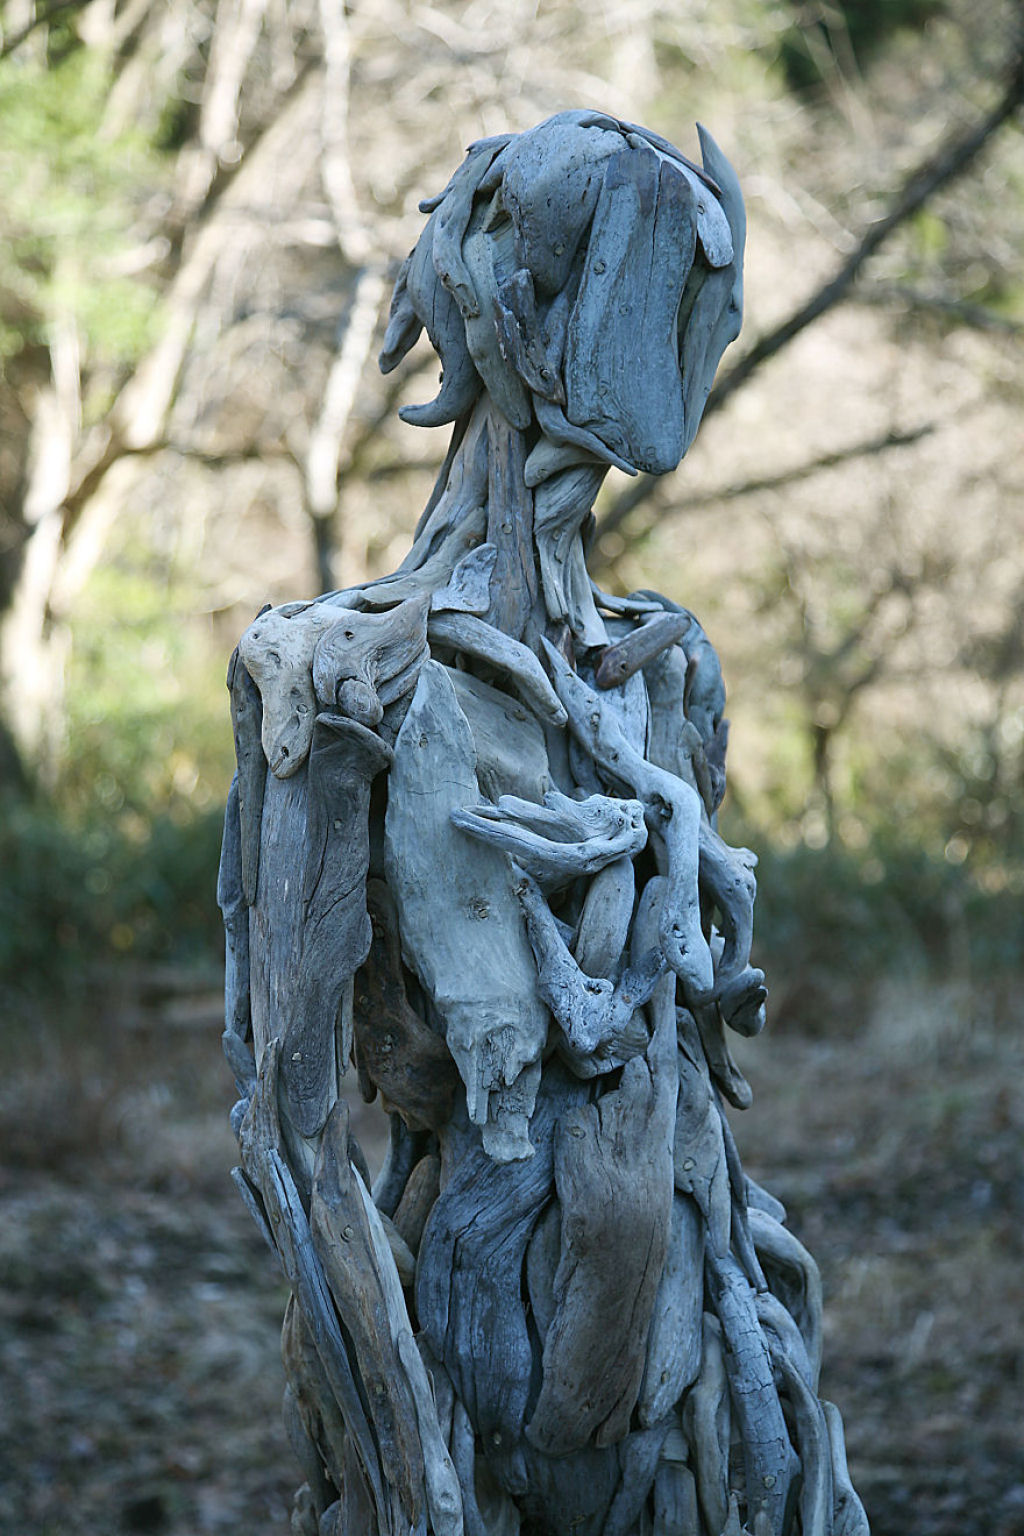 As inquietantes esculturas feitas com detrito de madeira no meio de bosque pelo japons Nagato Iwasaki 06